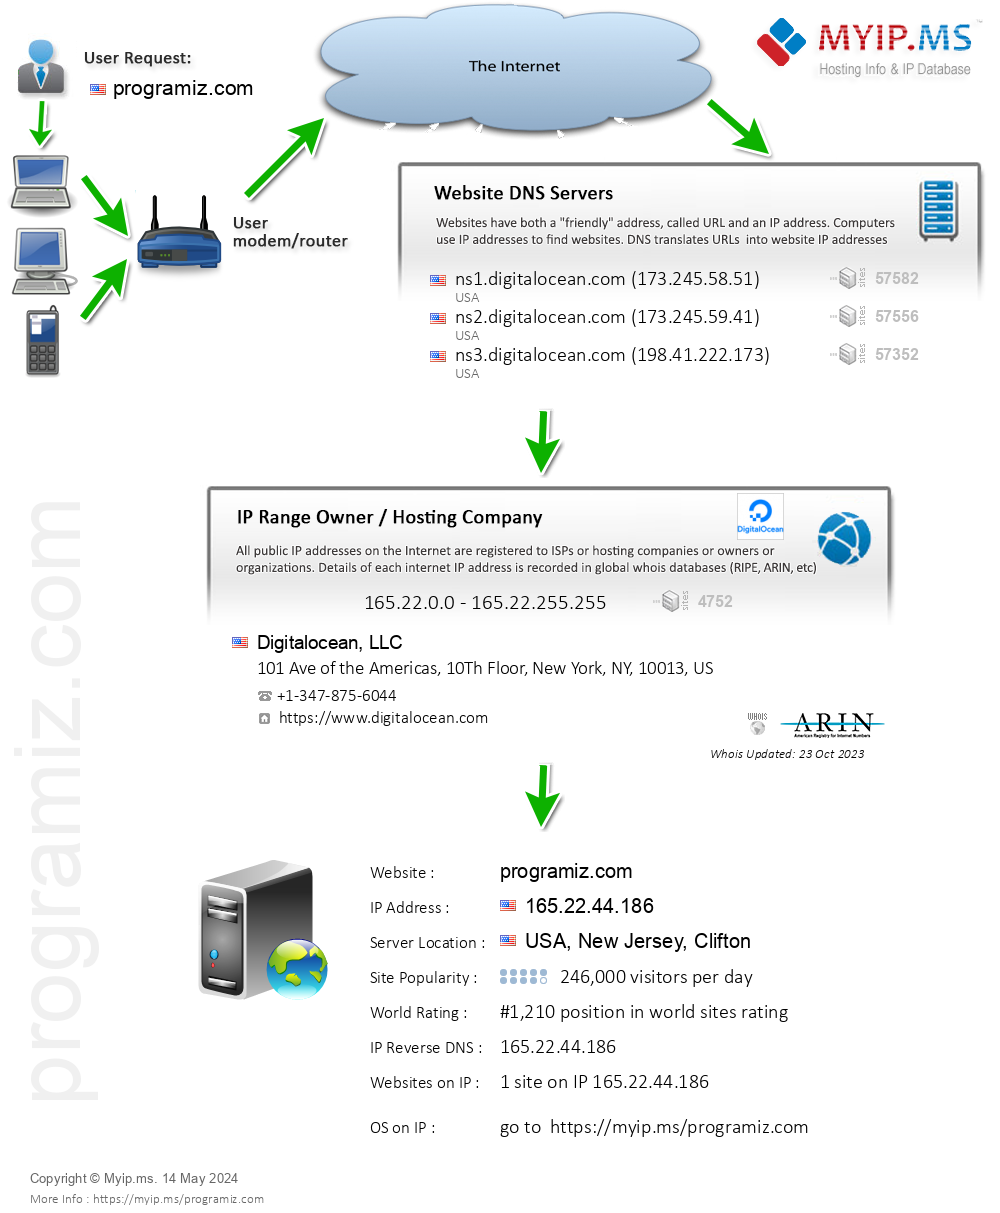 Programiz.com - Website Hosting Visual IP Diagram